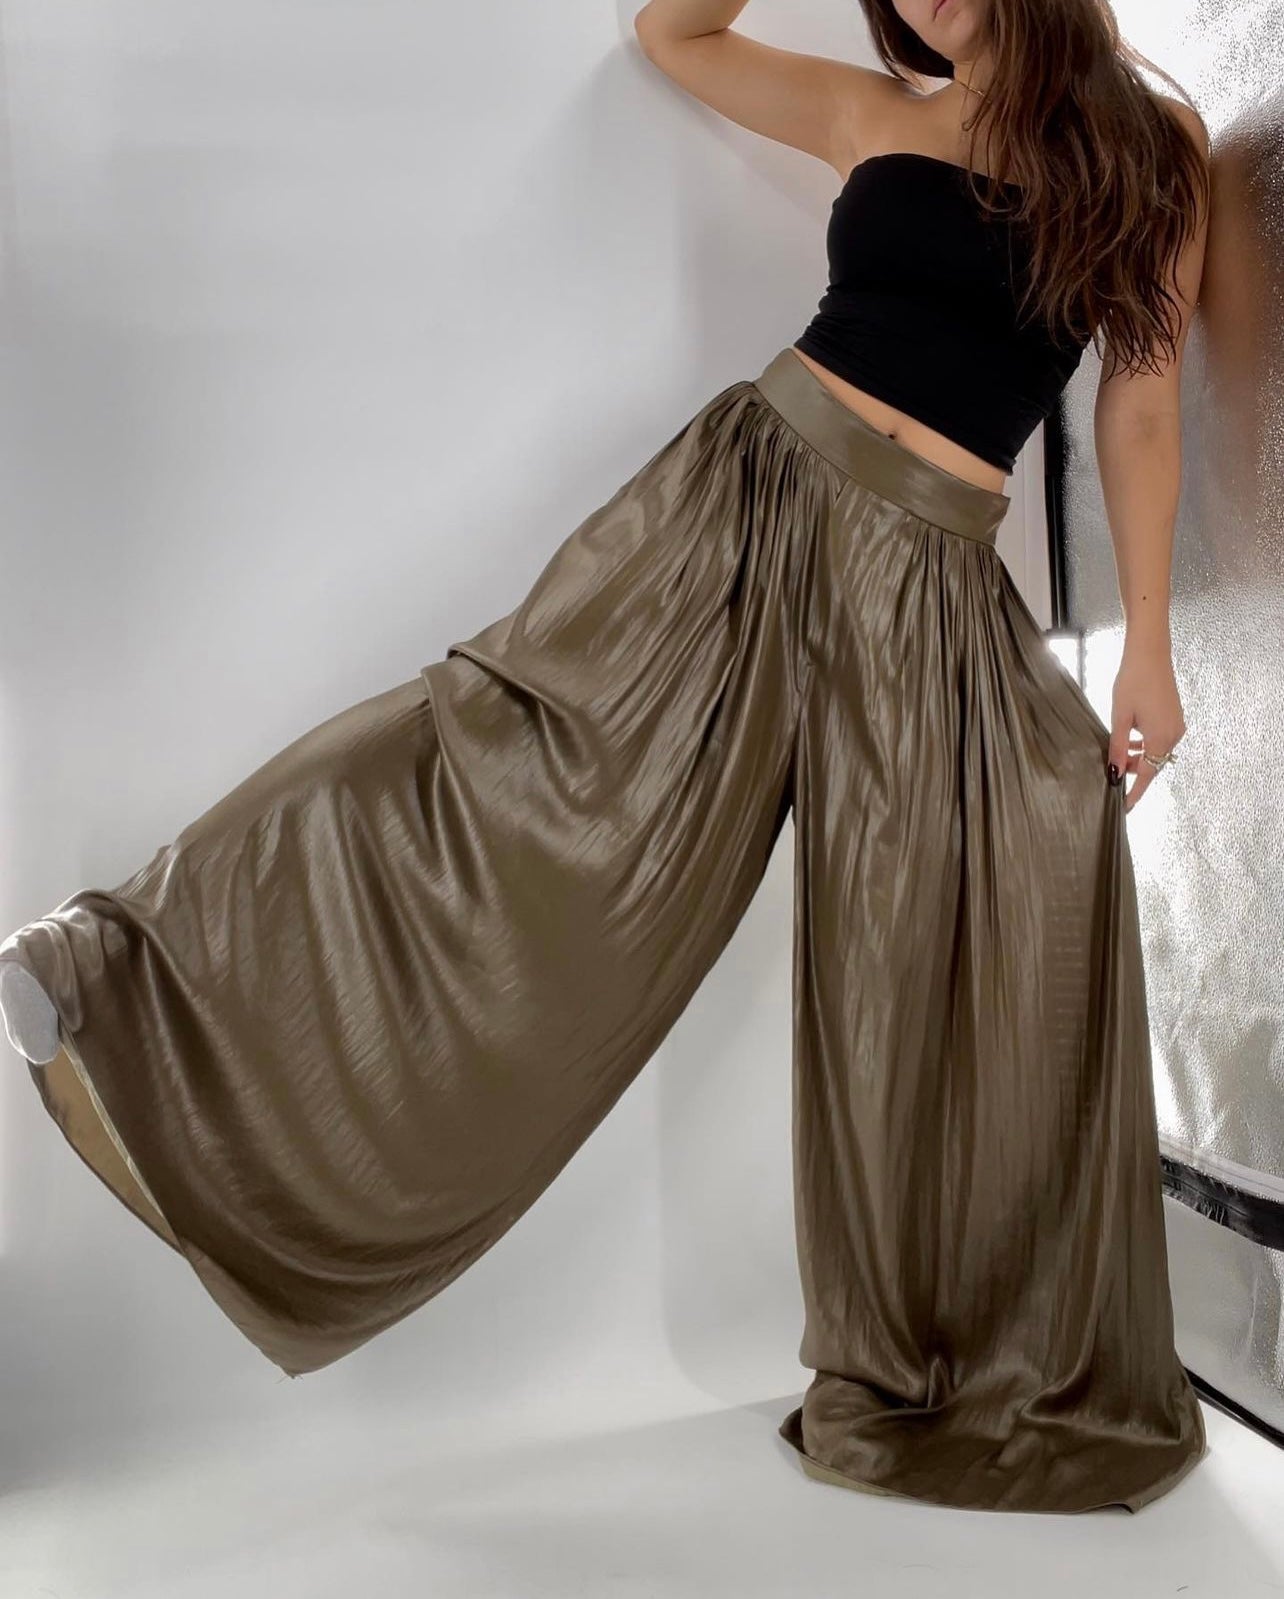 ZARA molten metal wide leg pantalons (XL)